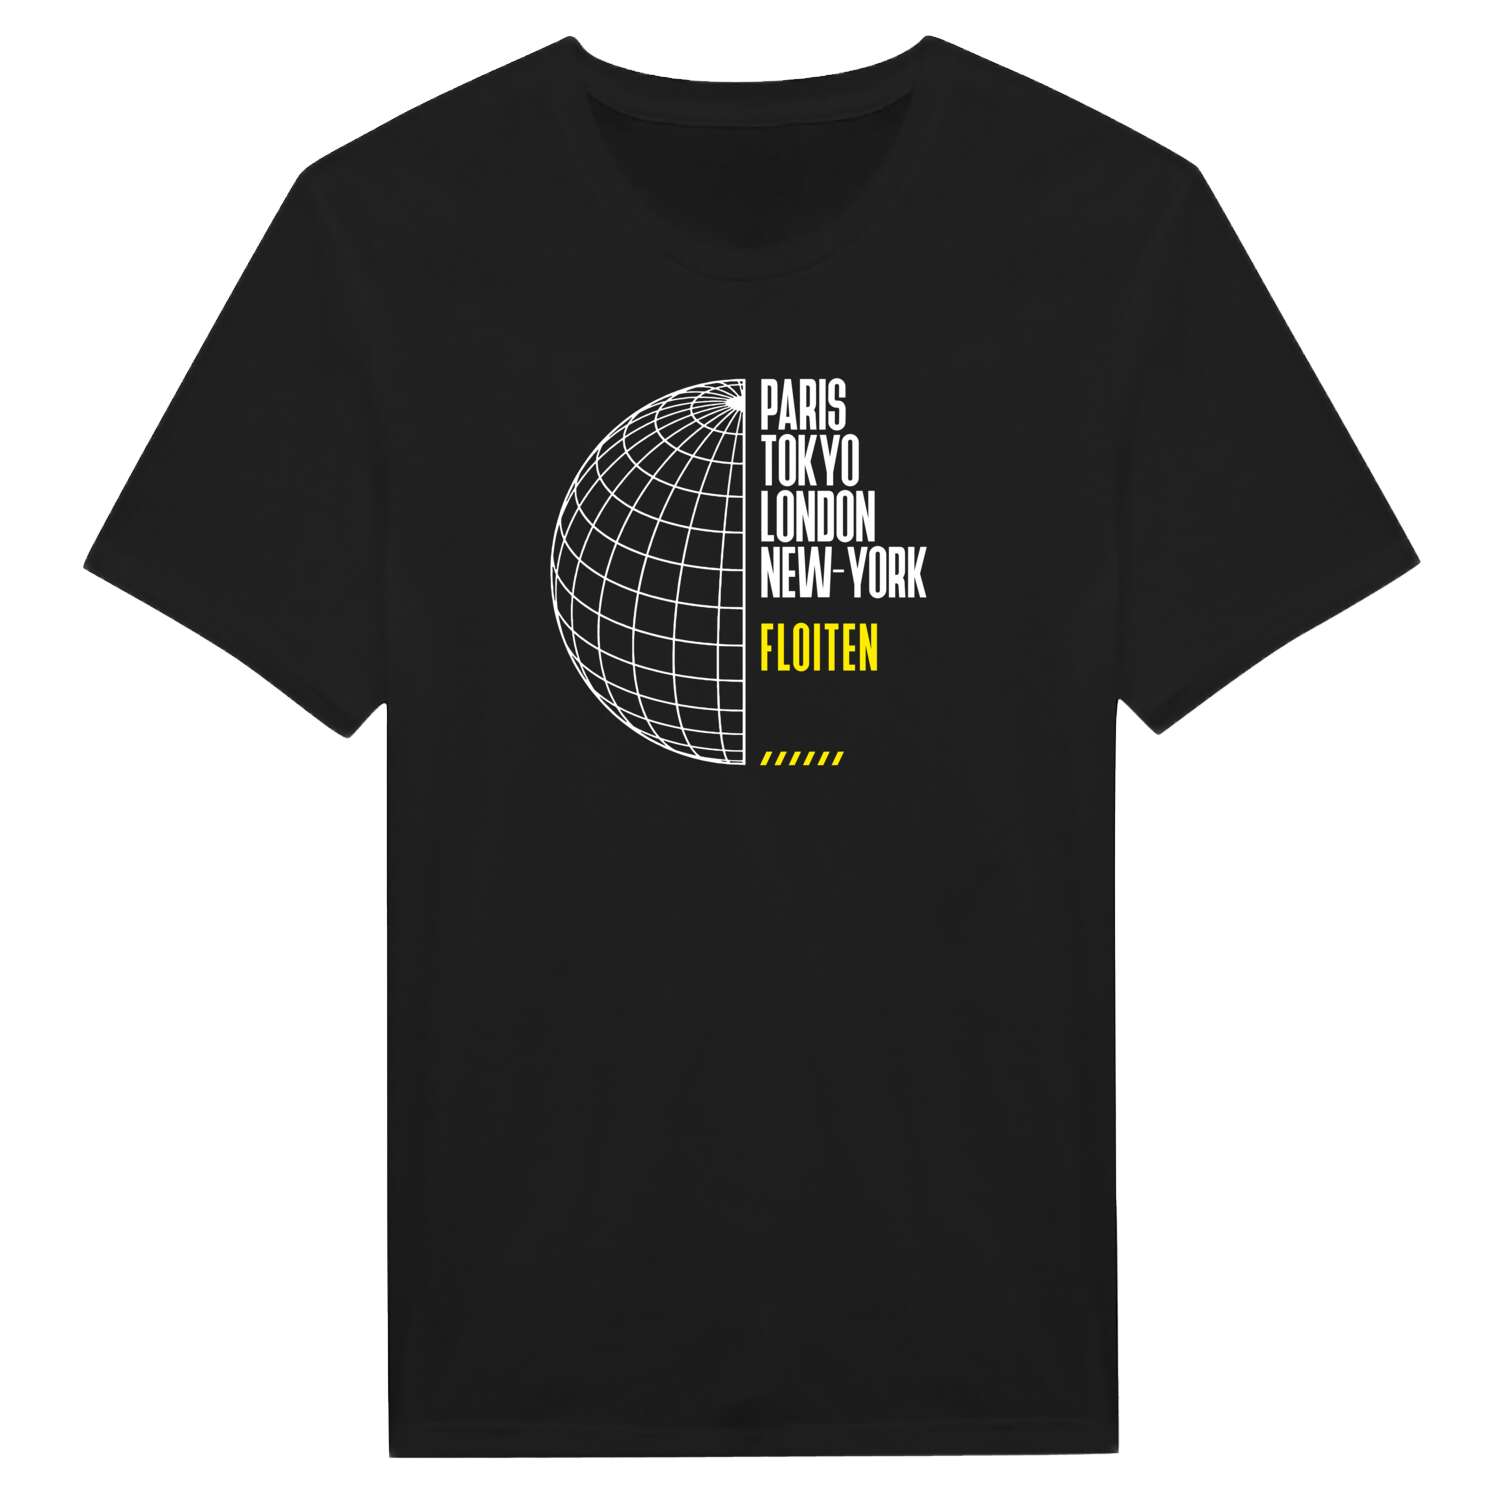 Floiten T-Shirt »Paris Tokyo London«